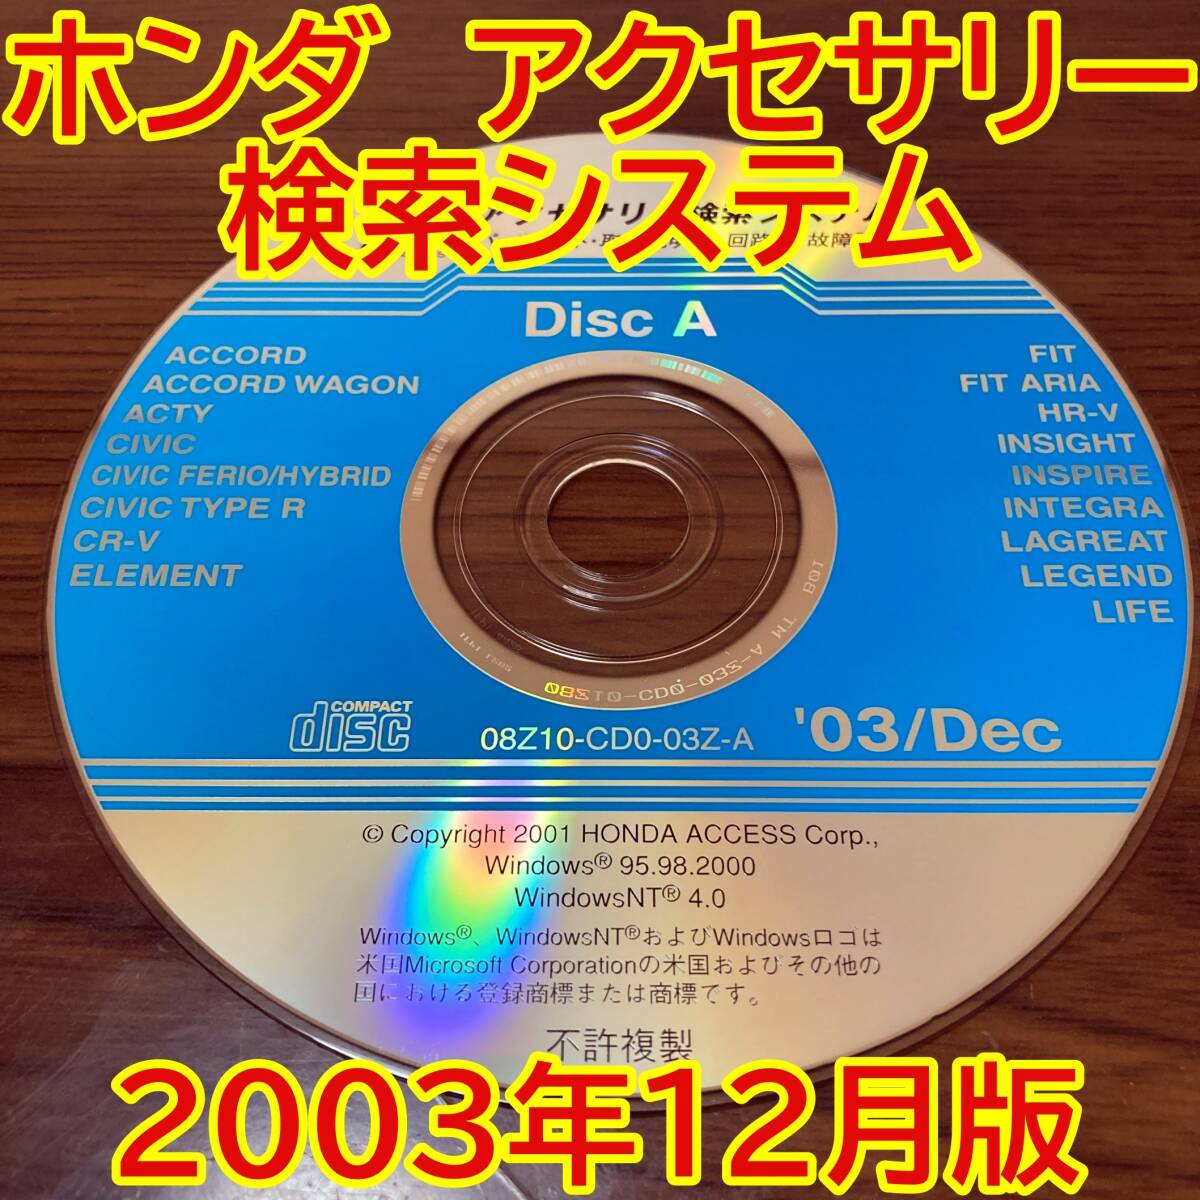 2003年12月版 ホンダ純正 アクセサリー検索システム Disc A 取付説明書 配線図 [H178]_画像1